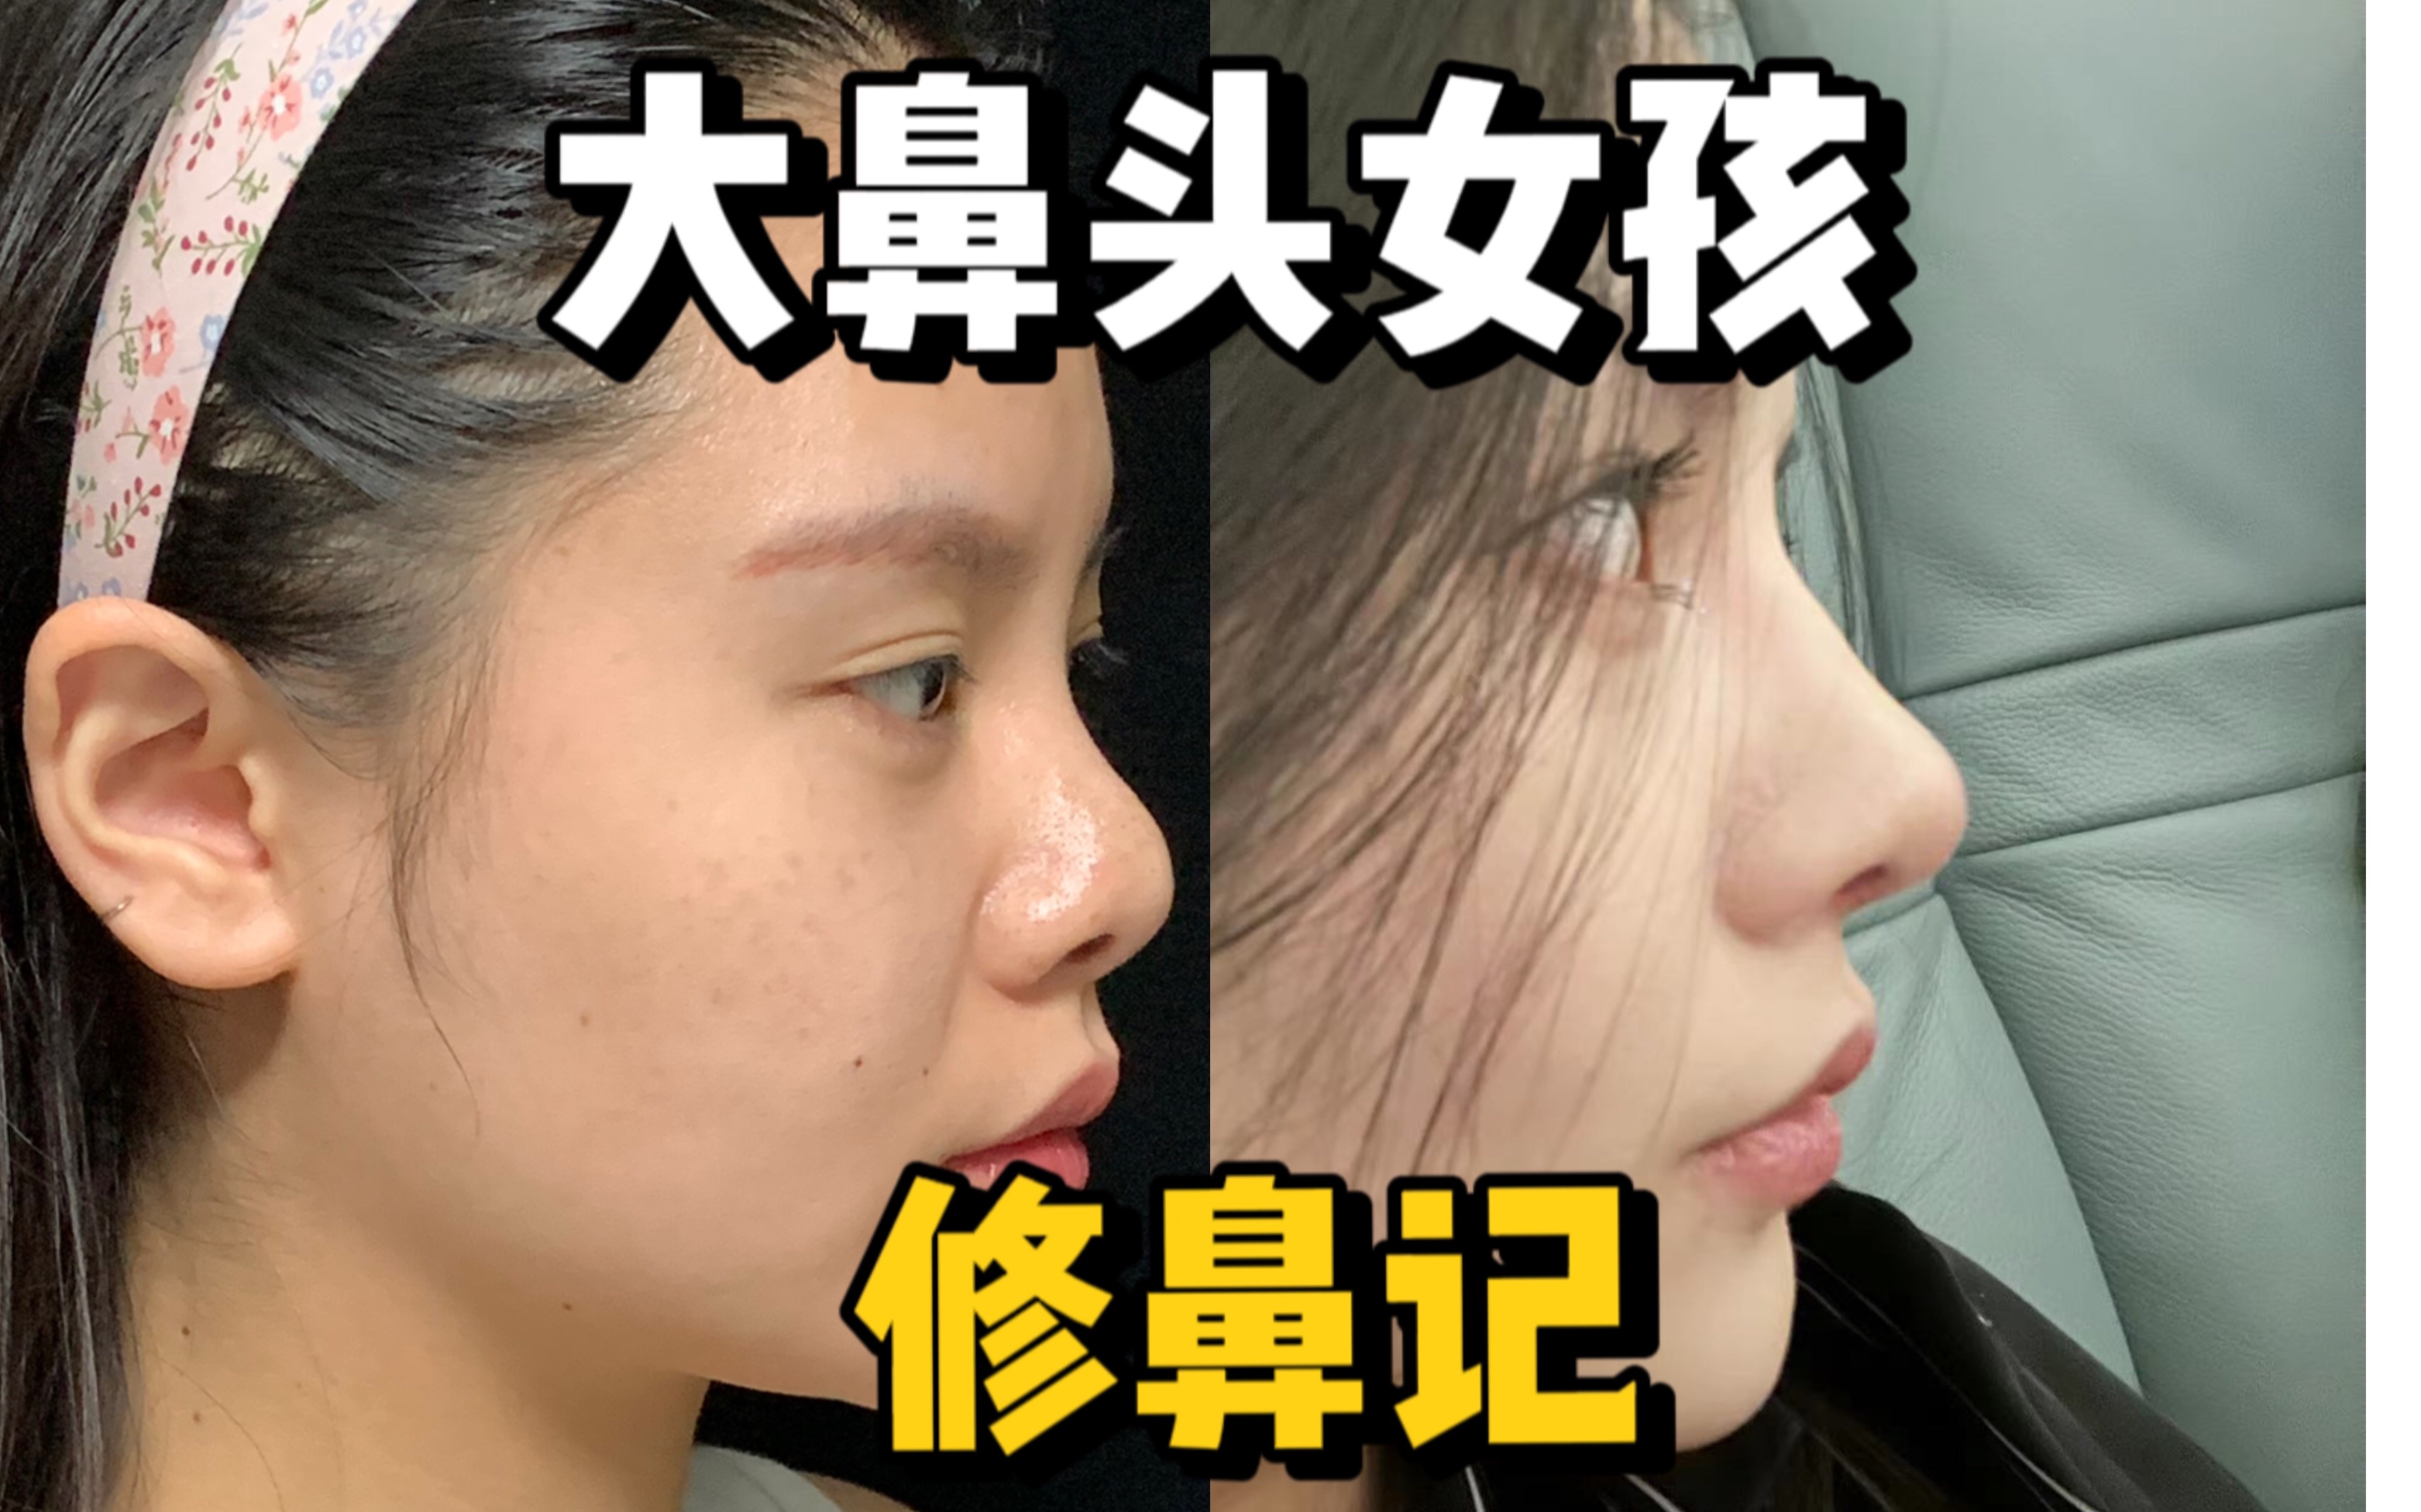 大鼻头该怎么改善呢？